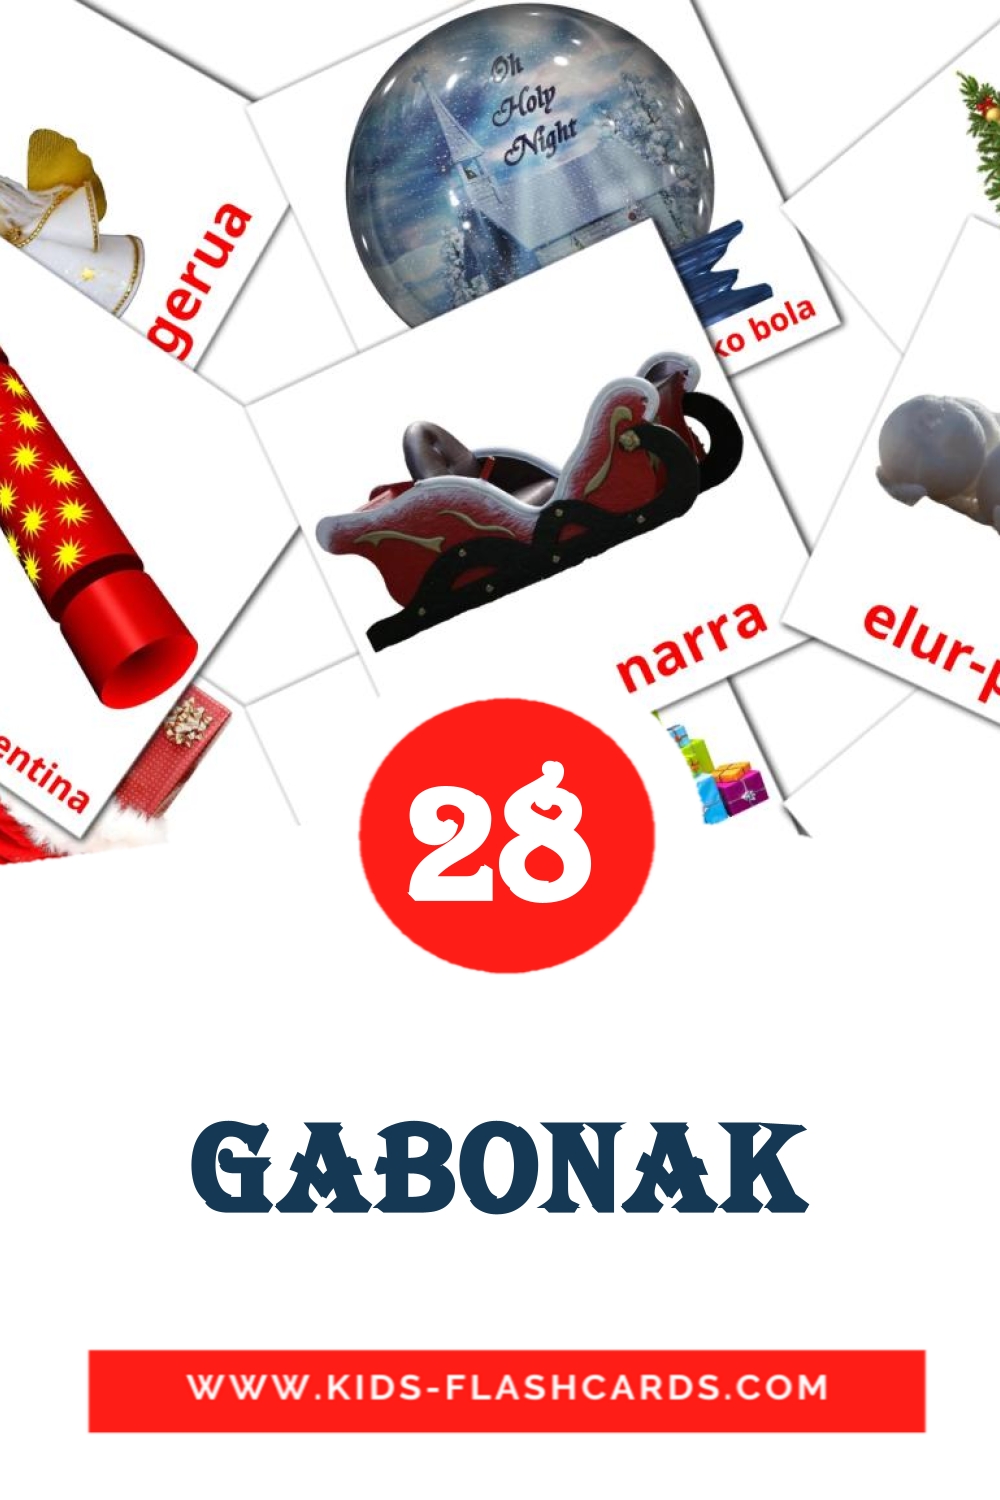 28 cartes illustrées de Gabonak pour la maternelle en basque